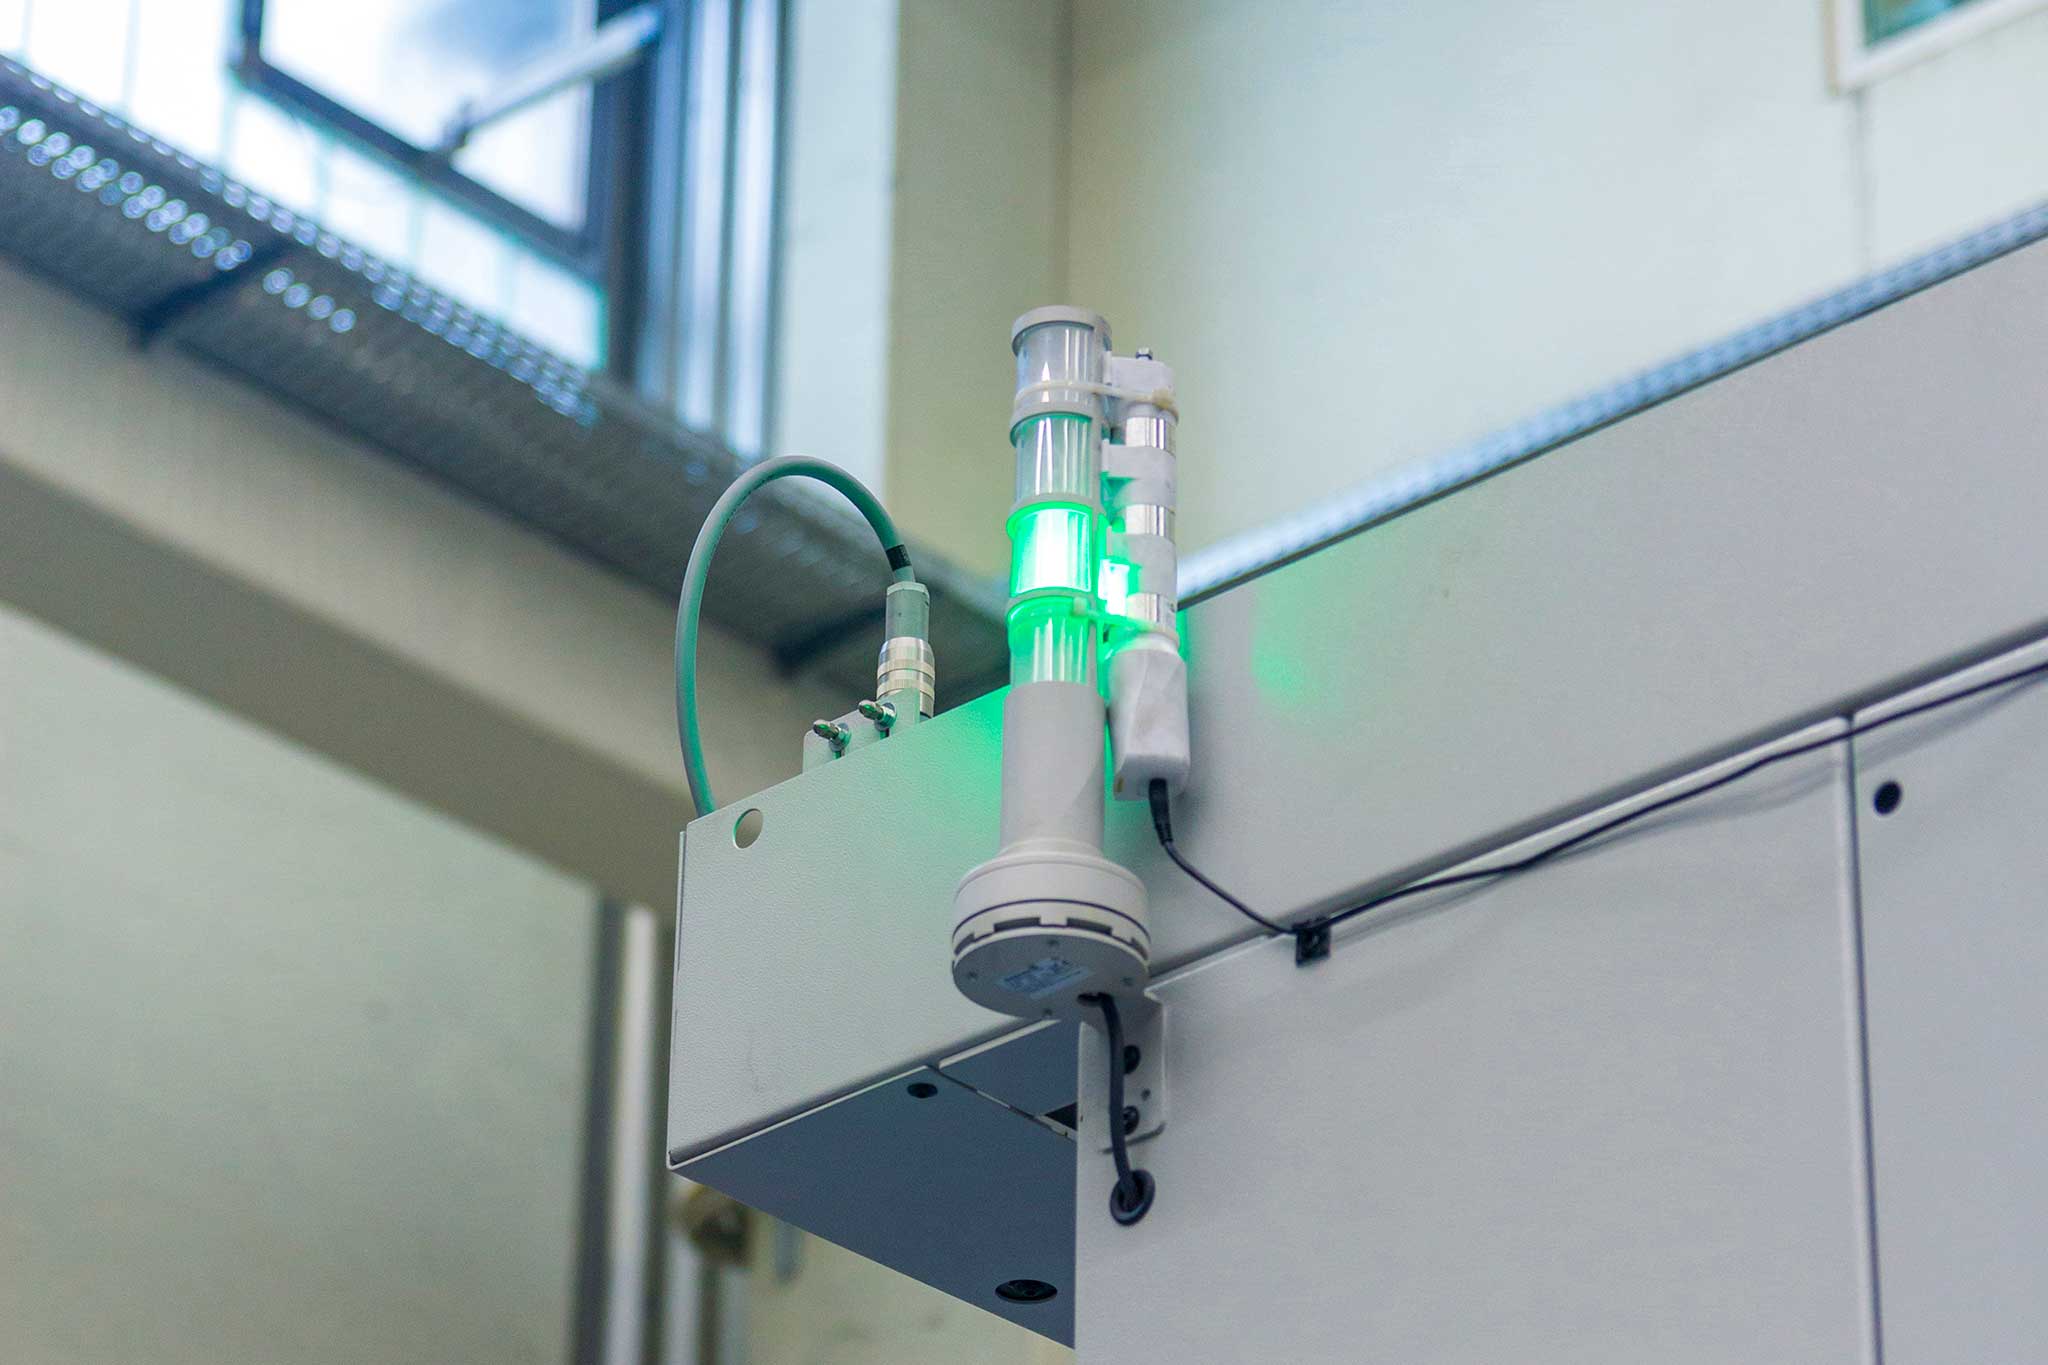 Die grün leuchtende Maschinenampel ist zu sehen. An sie angeschlossen sind Sensoren zur Überwachung.